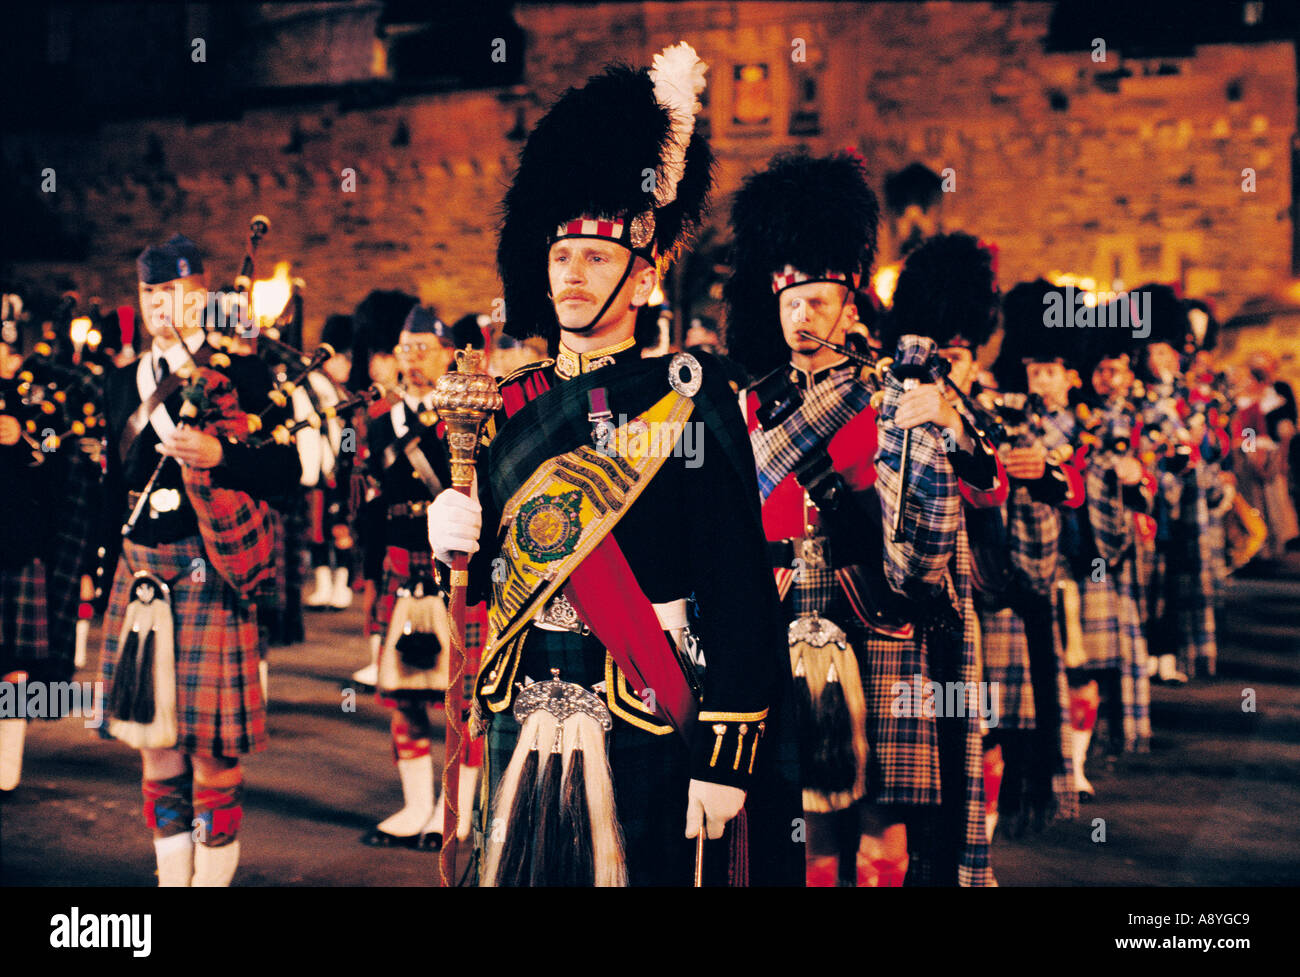 Edinburgh Military Tattoo. Scottish pipe band pipers sur l'esplanade devant le Château d'Édimbourg, Écosse, Royaume-Uni Banque D'Images